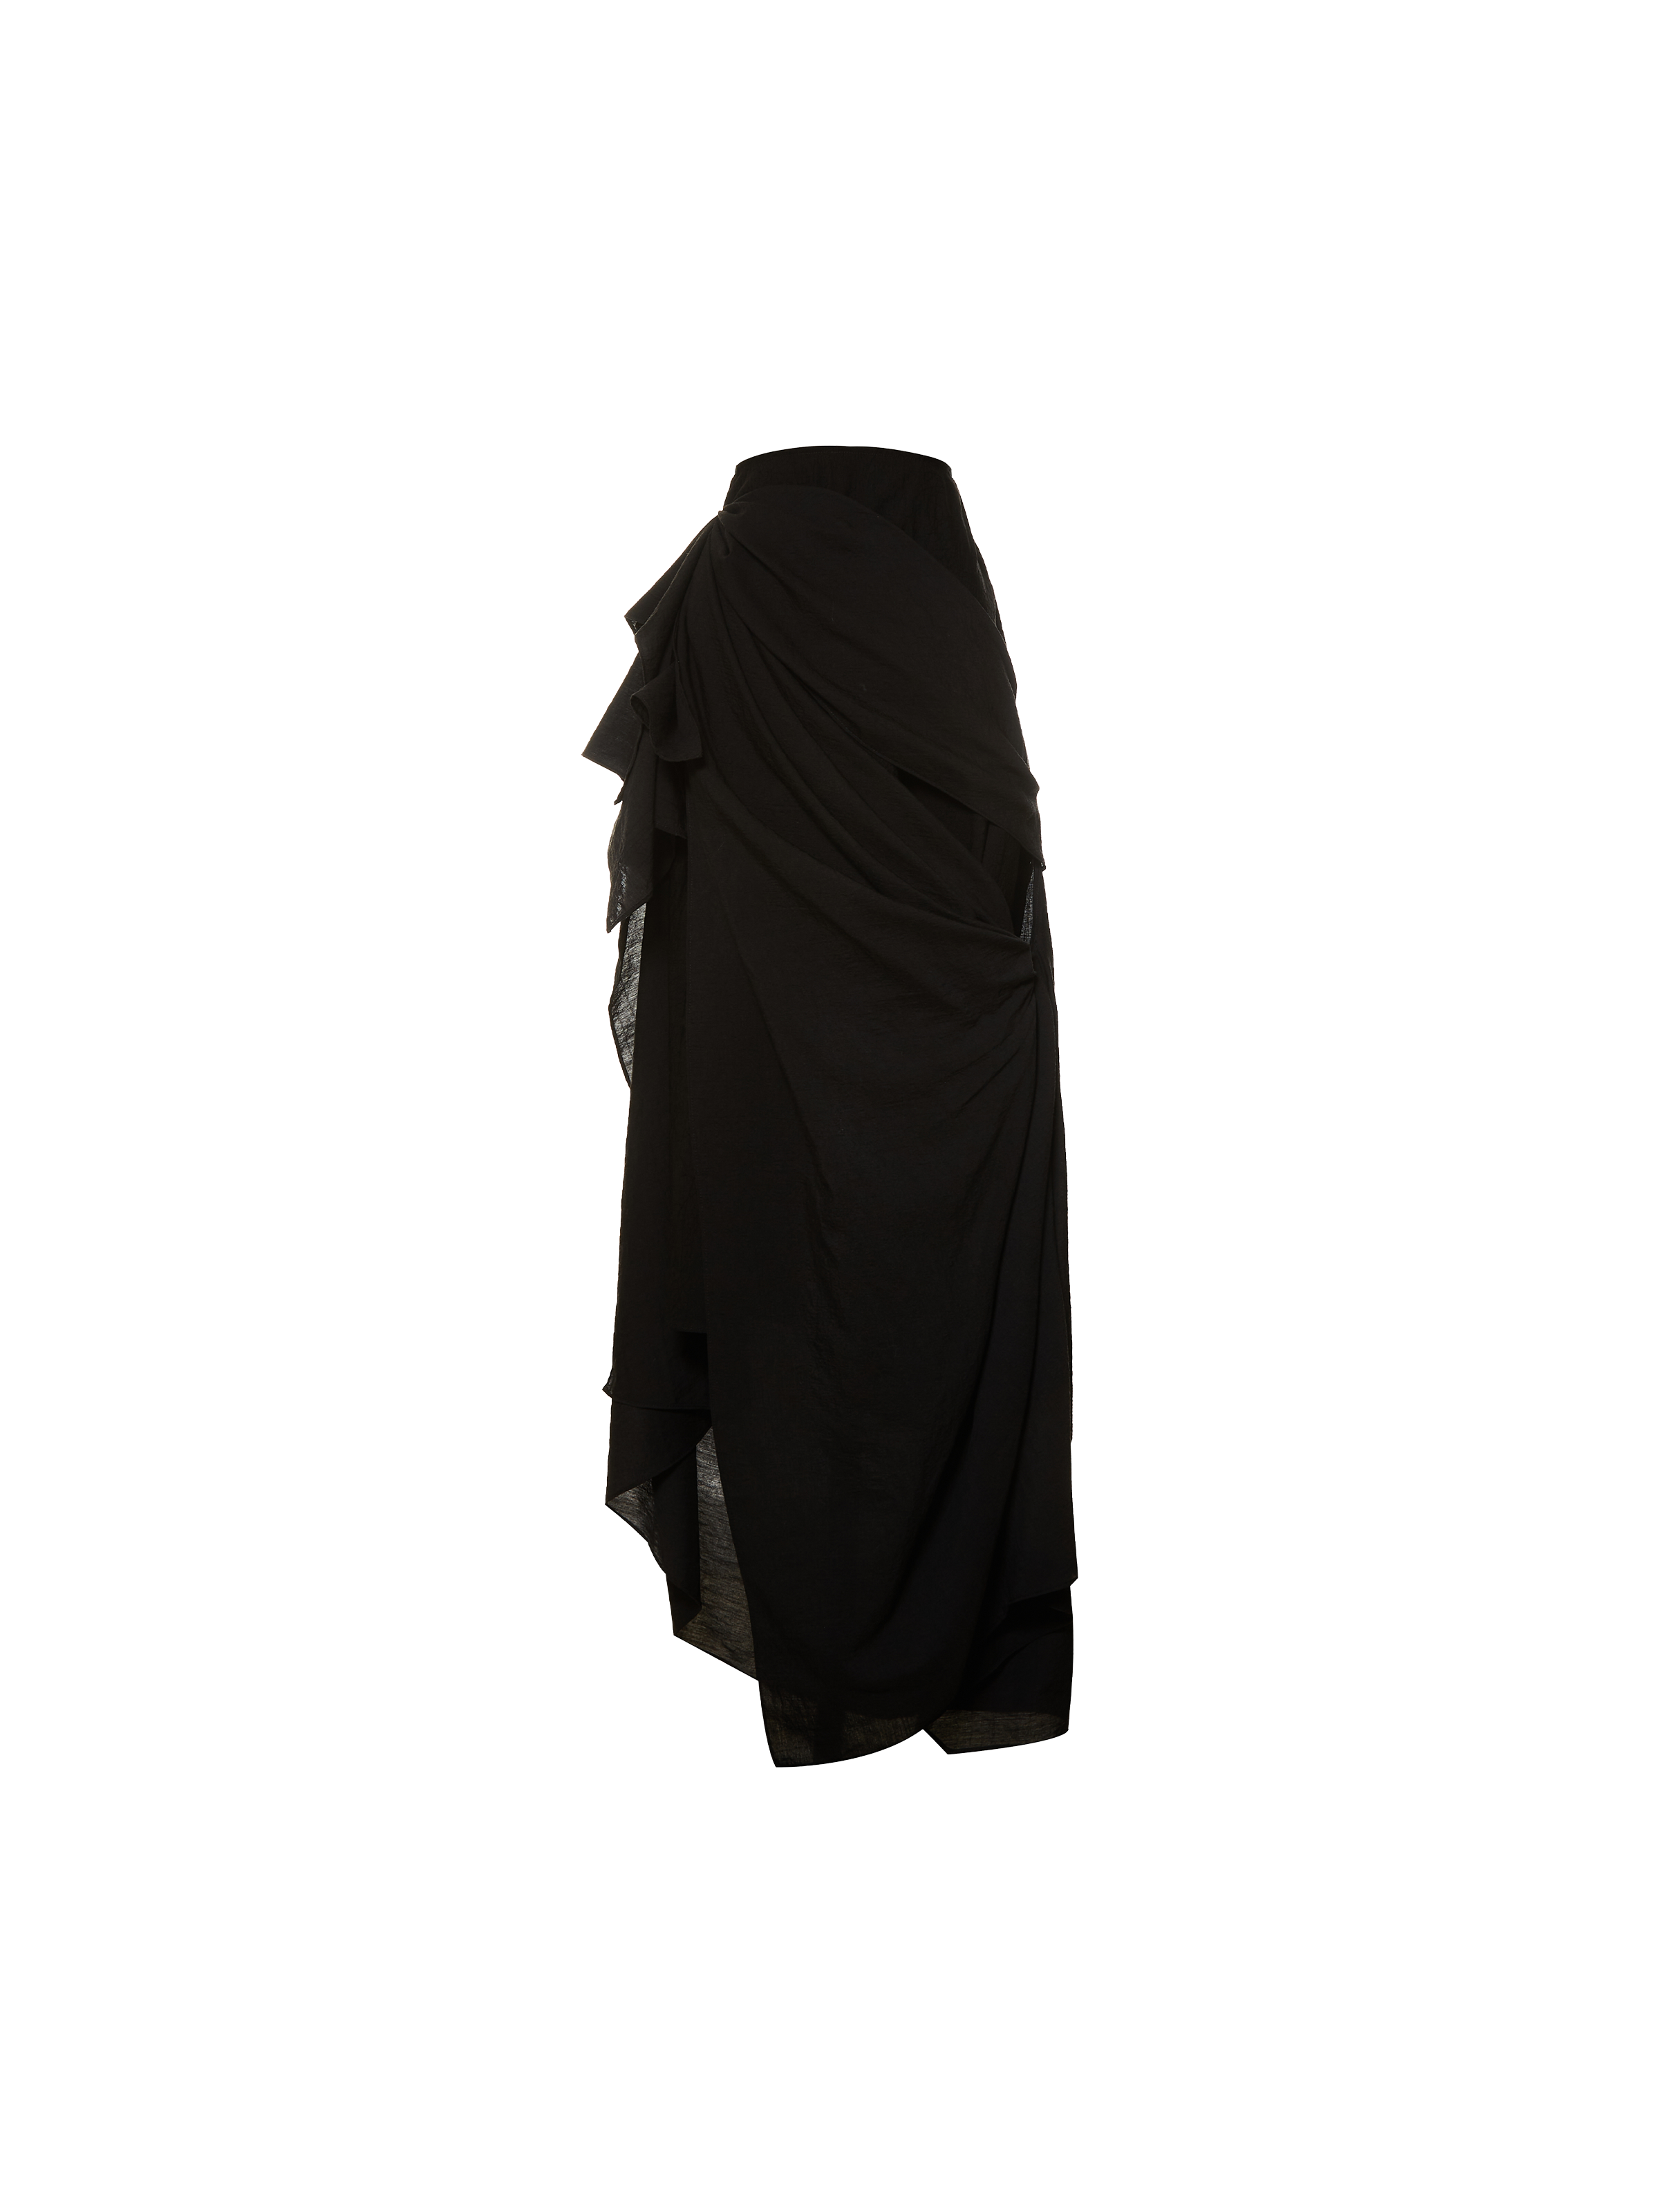 블랙 픽스 포인트 하프 드레스